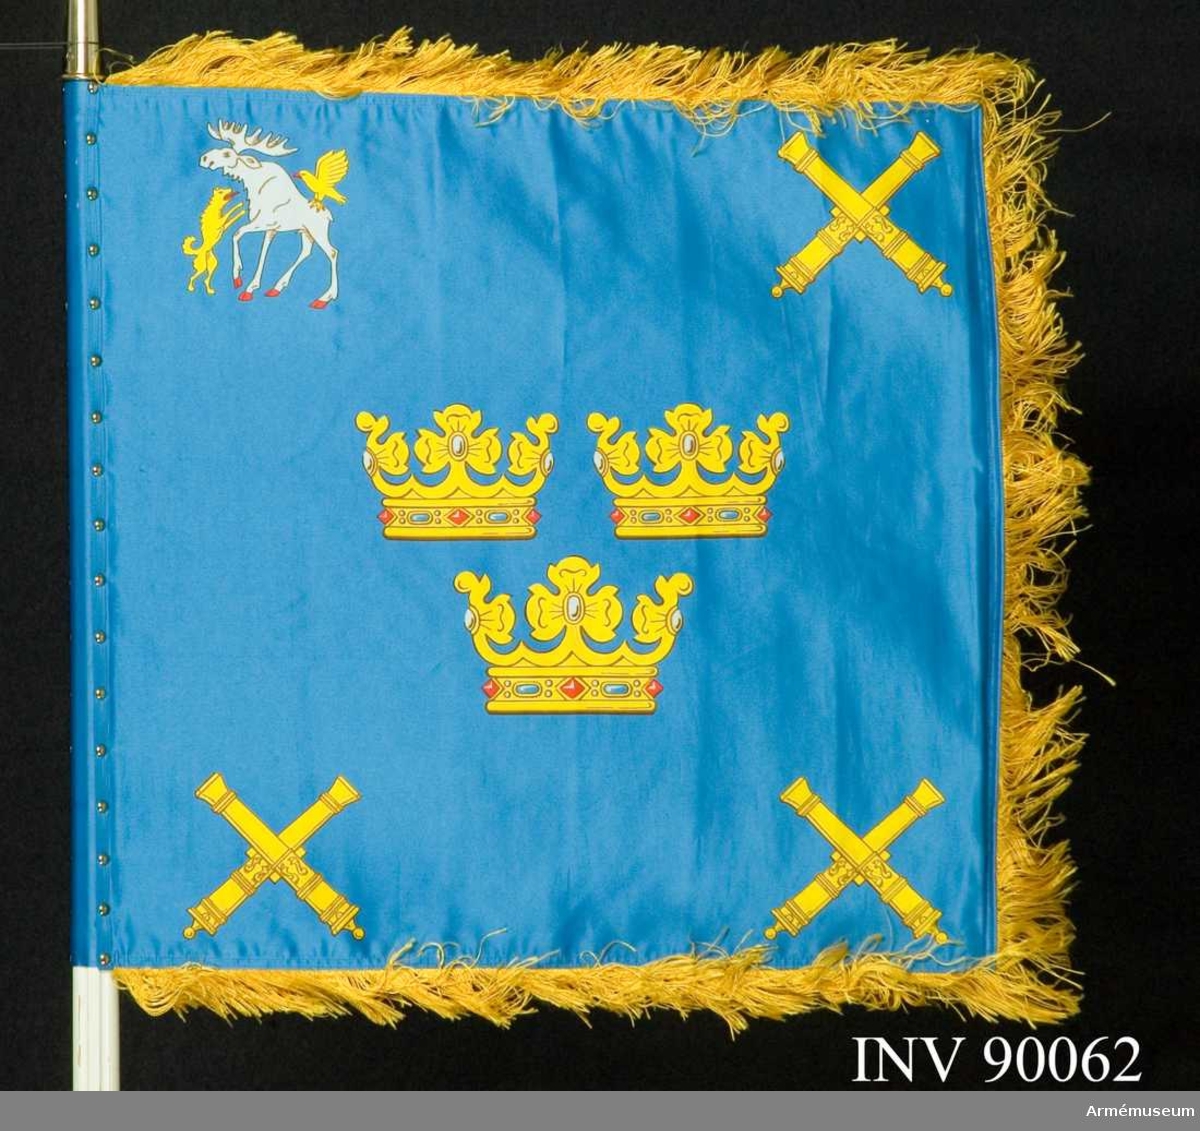 Text på doppsko: "Vaktstandar tillverkad 1986
Kungliga Norrlands Artilleriregemente 16 juni 1938 Gustav V"

